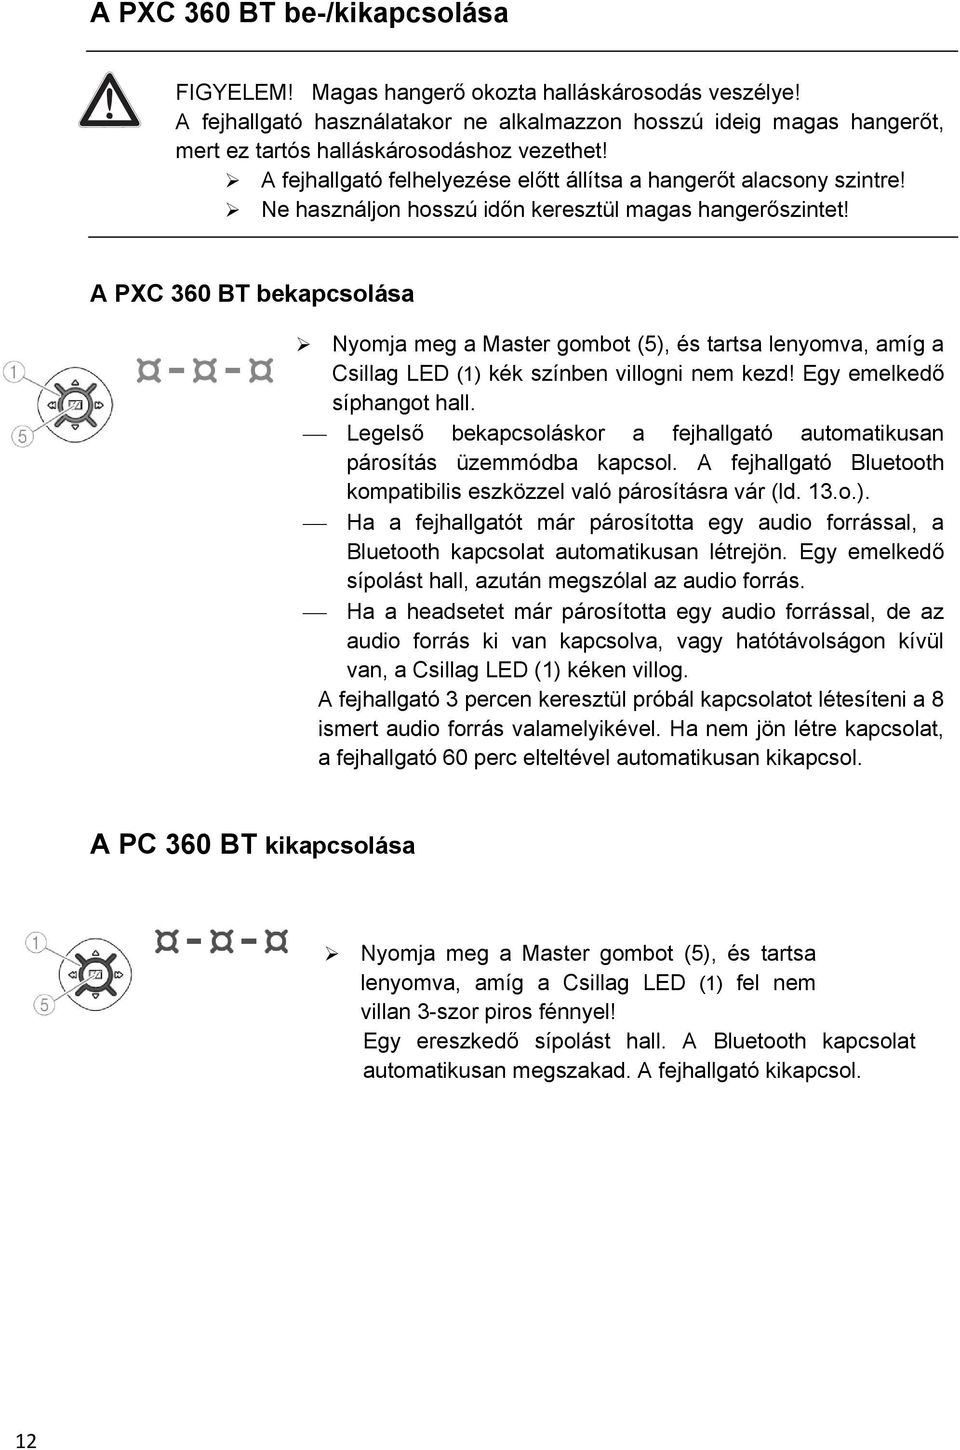 PXC 360BT. Használati útmutató - PDF Ingyenes letöltés